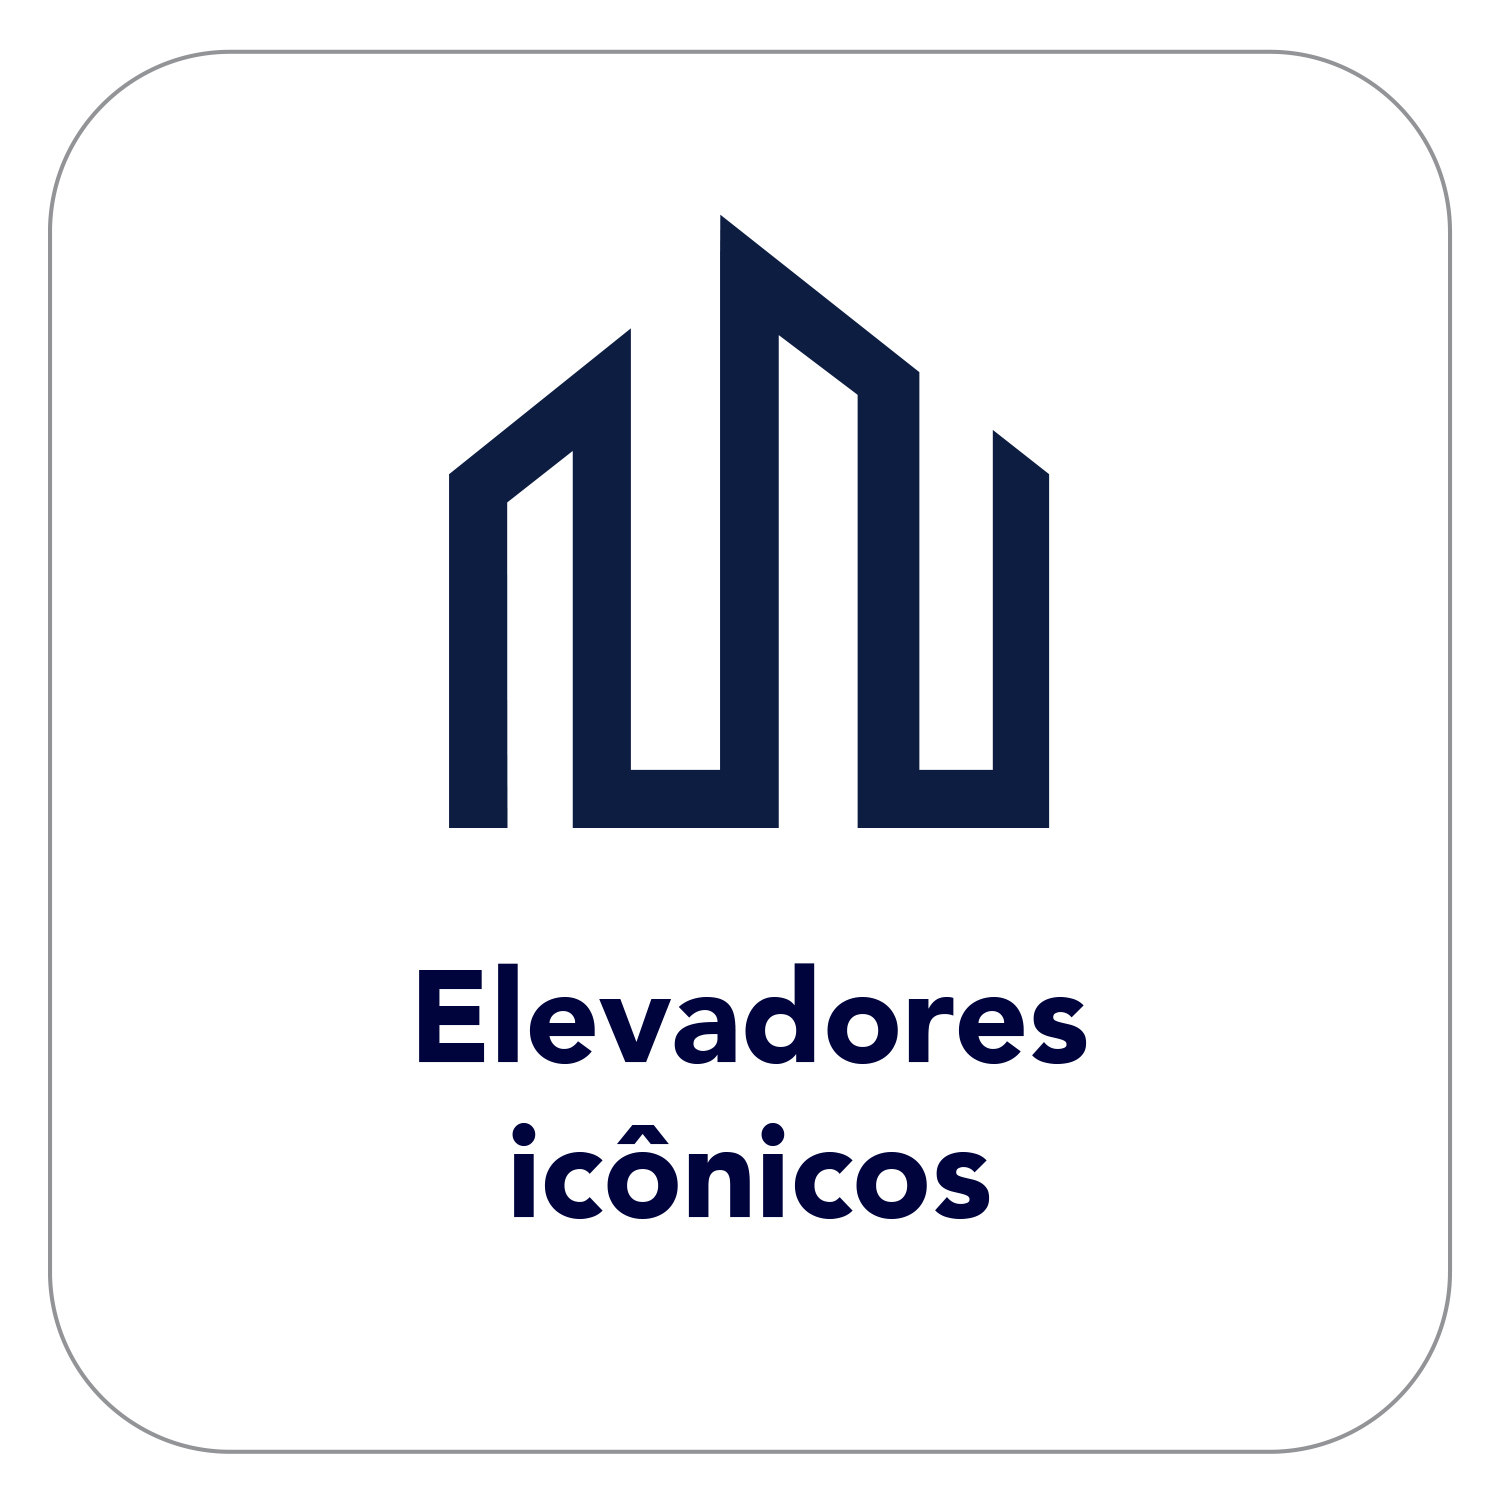 elevadores-iconicos